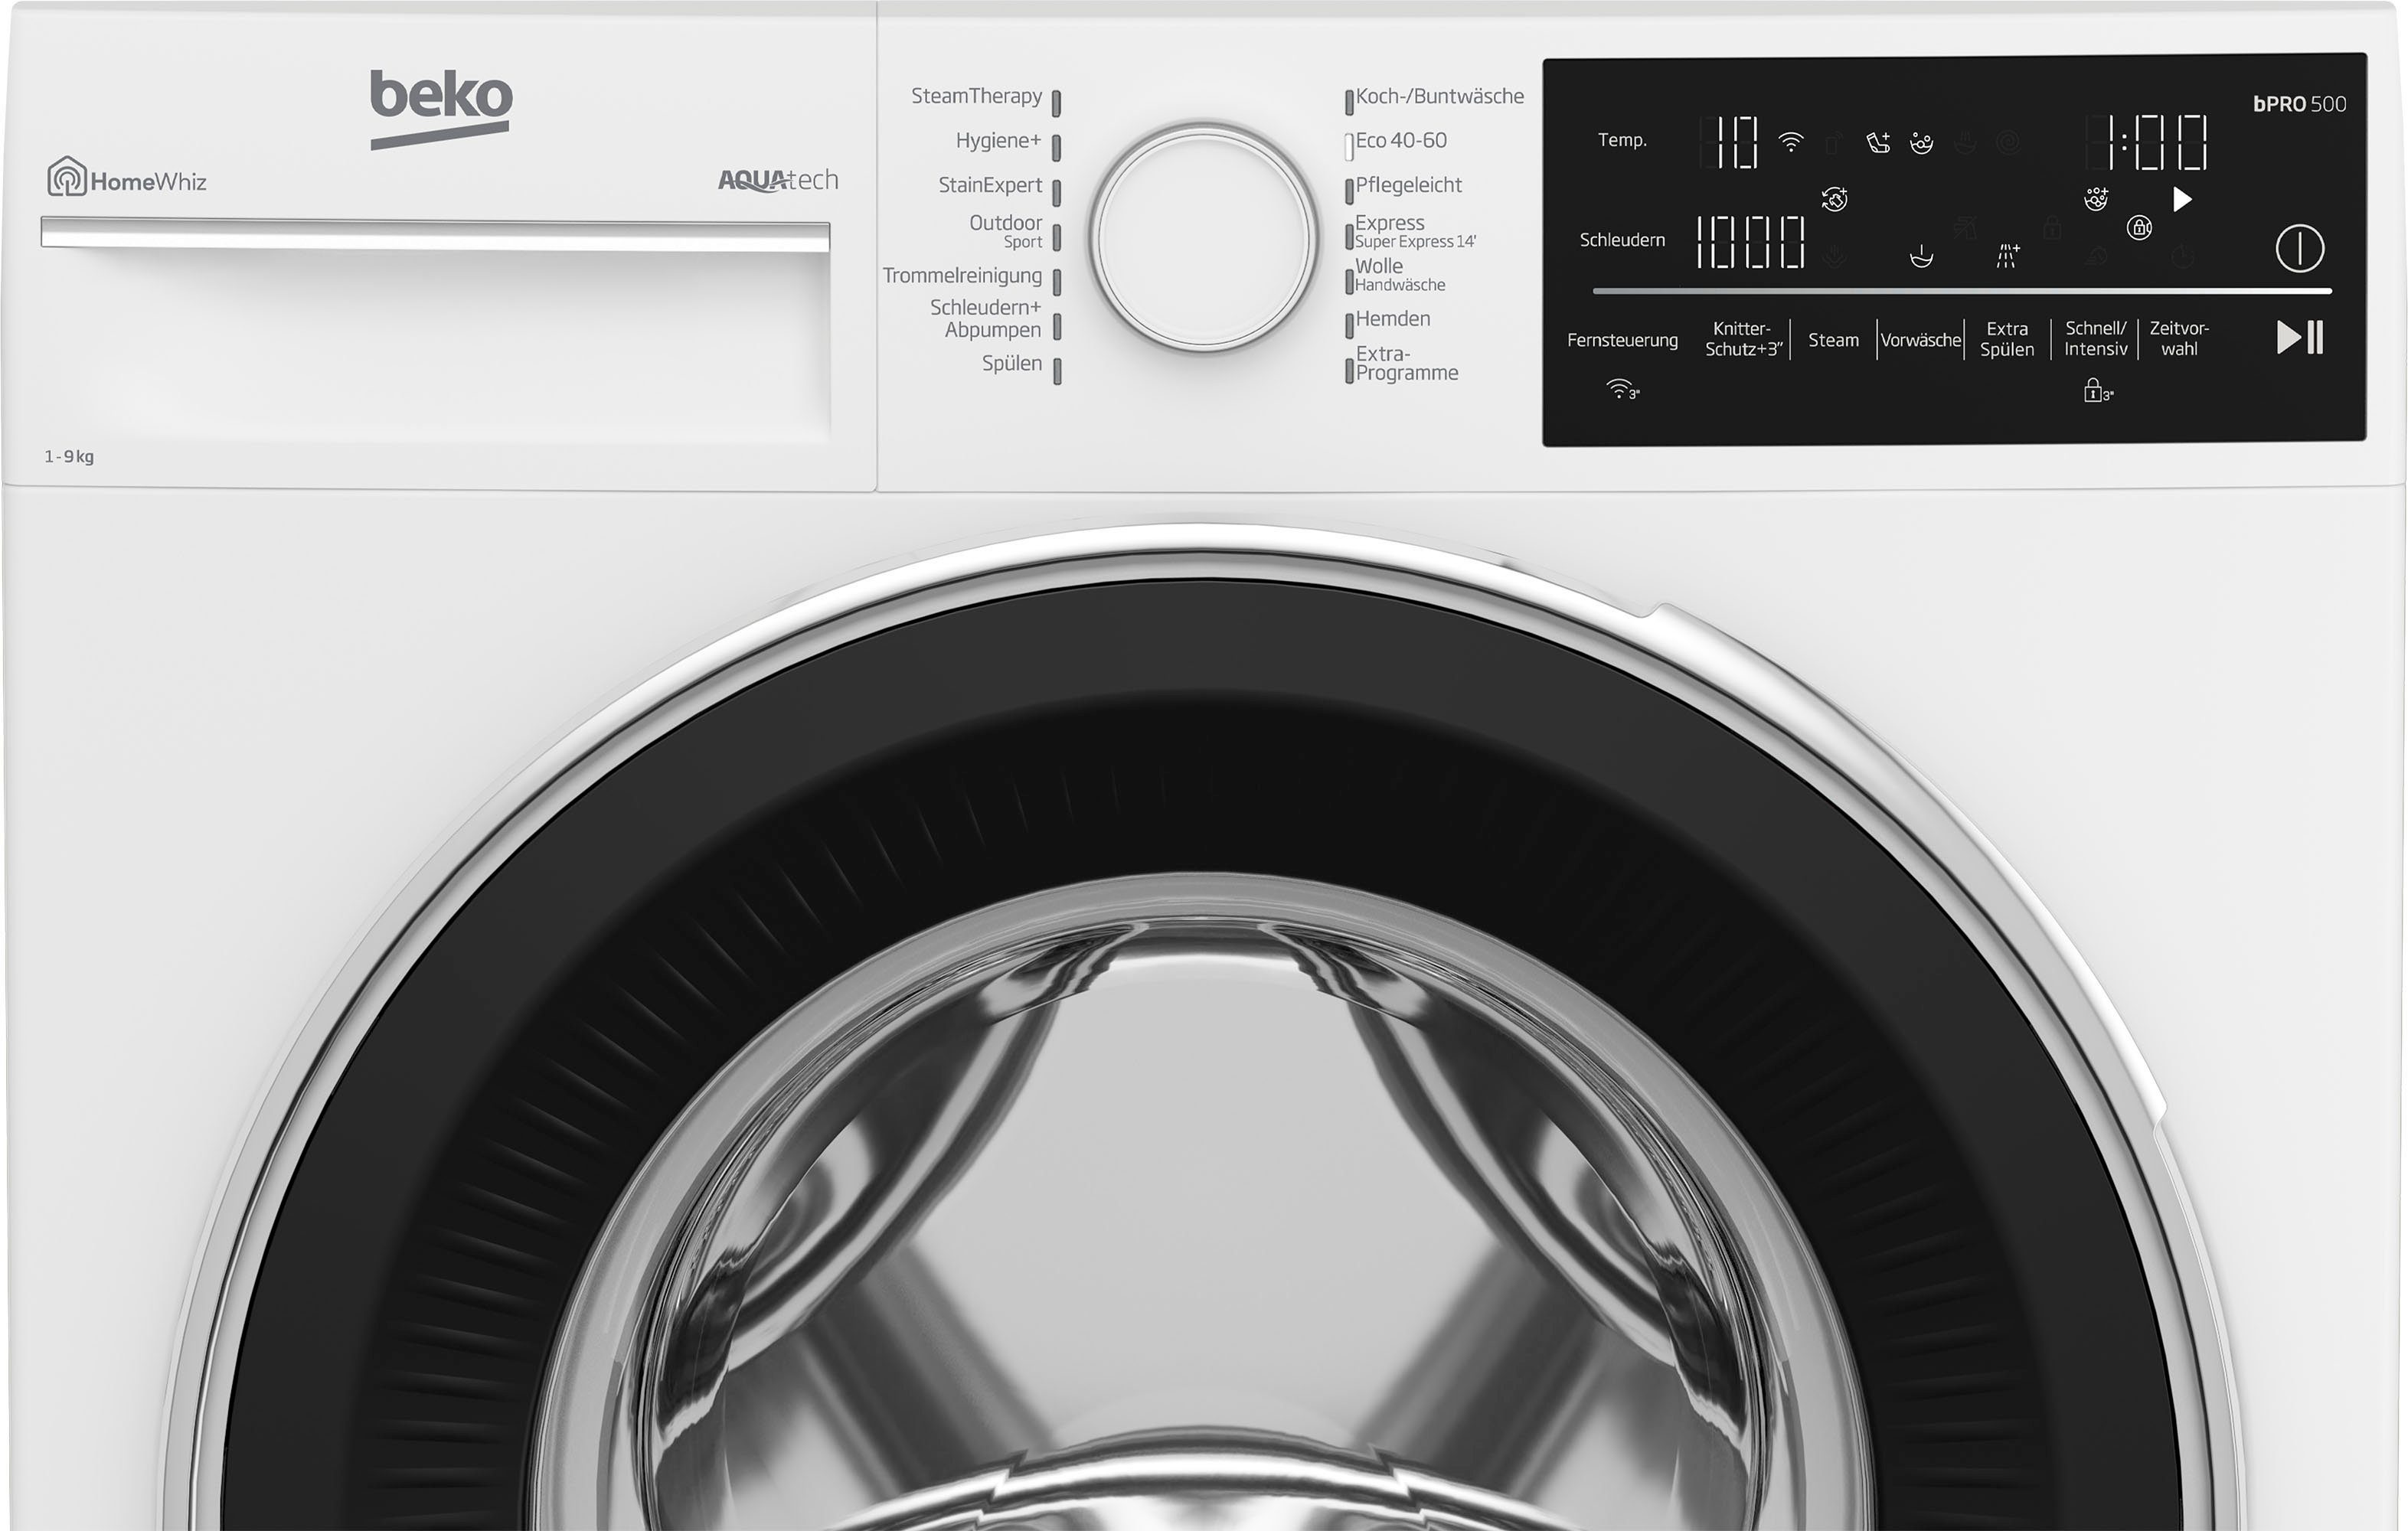 Waschmaschine 1400 U/min B5WFT89418W, BEKO kg, 9